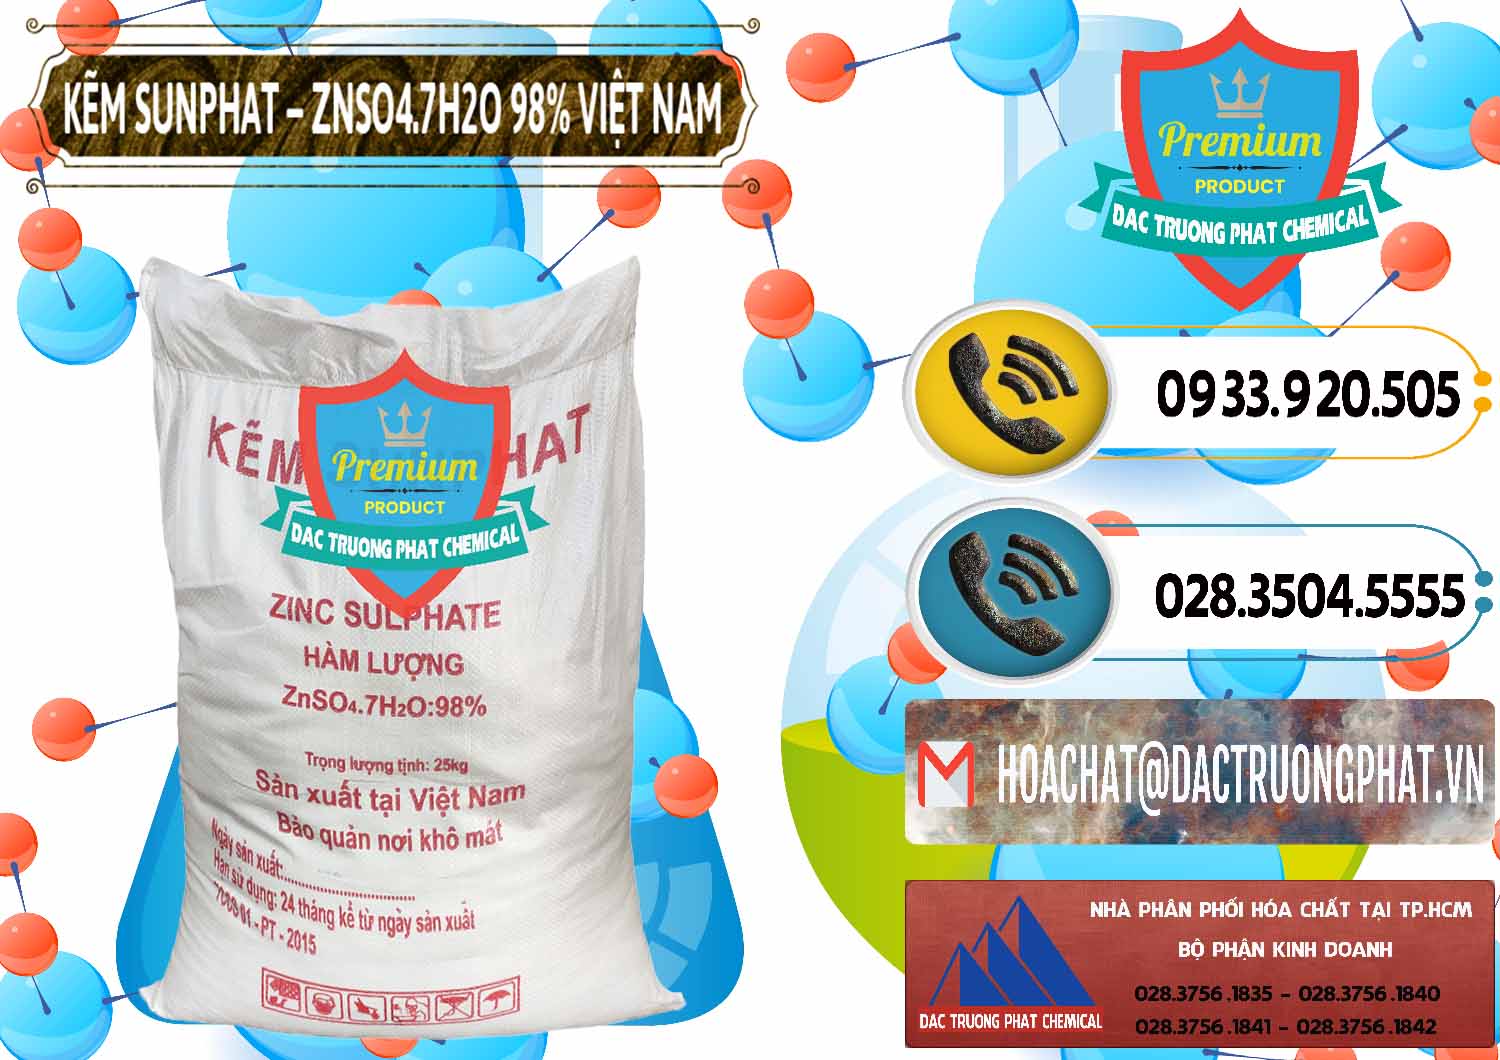 Nơi chuyên cung cấp ( bán ) Kẽm Sunfat – ZNSO4.7H2O Việt Nam - 0189 - Cung cấp _ phân phối hóa chất tại TP.HCM - hoachatdetnhuom.vn